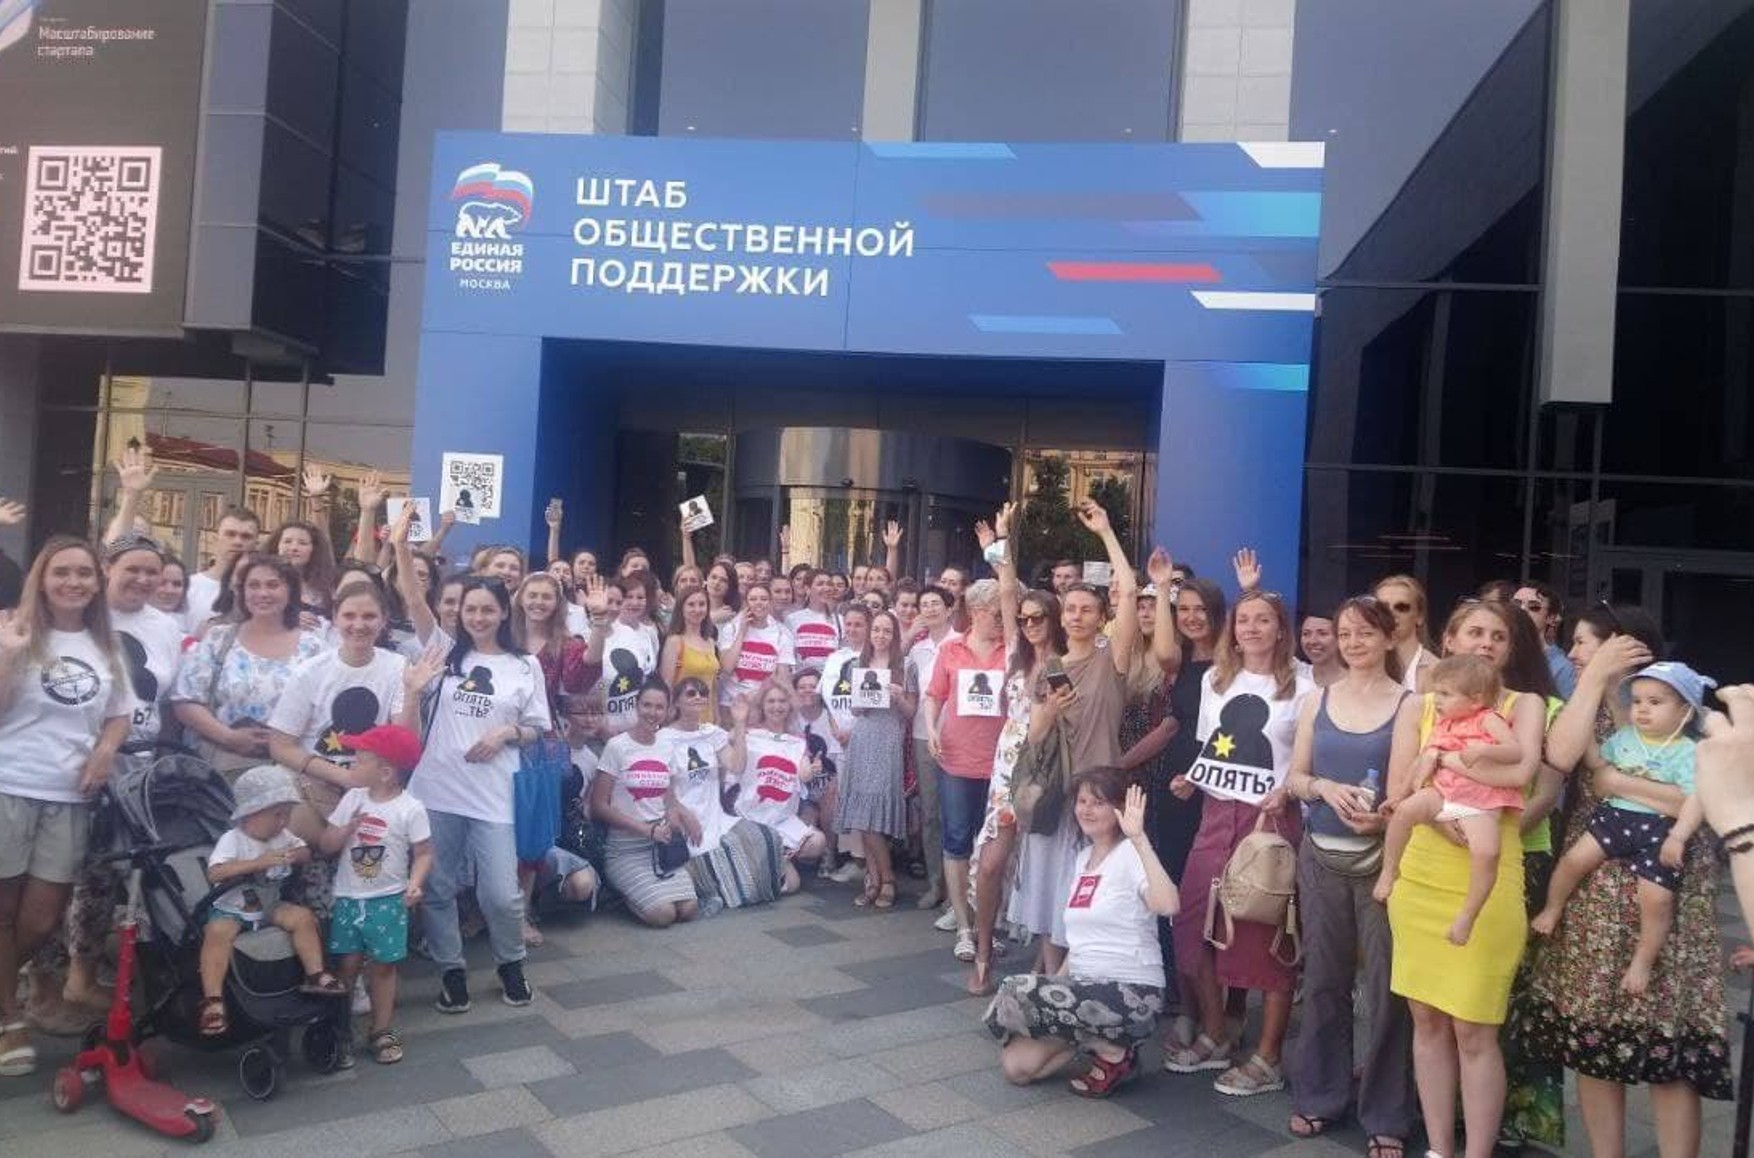 Противники примусової вакцинації прийшли до офісів ЕР. У Кремлі заявили, що ні протестів, ні обов'язкової вакцинації немає